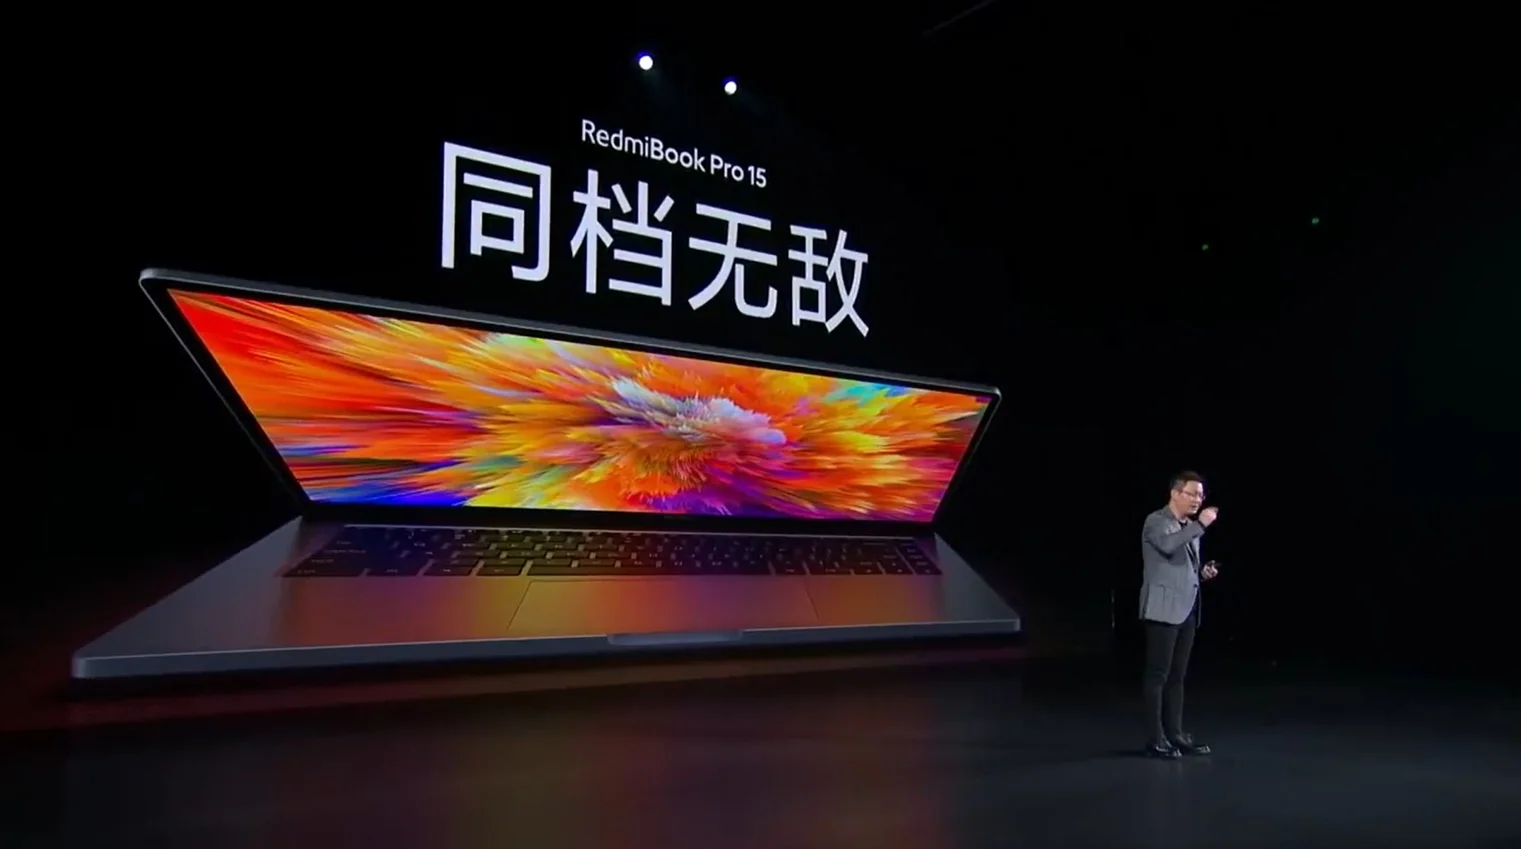 Xiaomi выпустила ноутбук RedmiBook Pro с процессорами Intel Core 11 поколения - фото 1